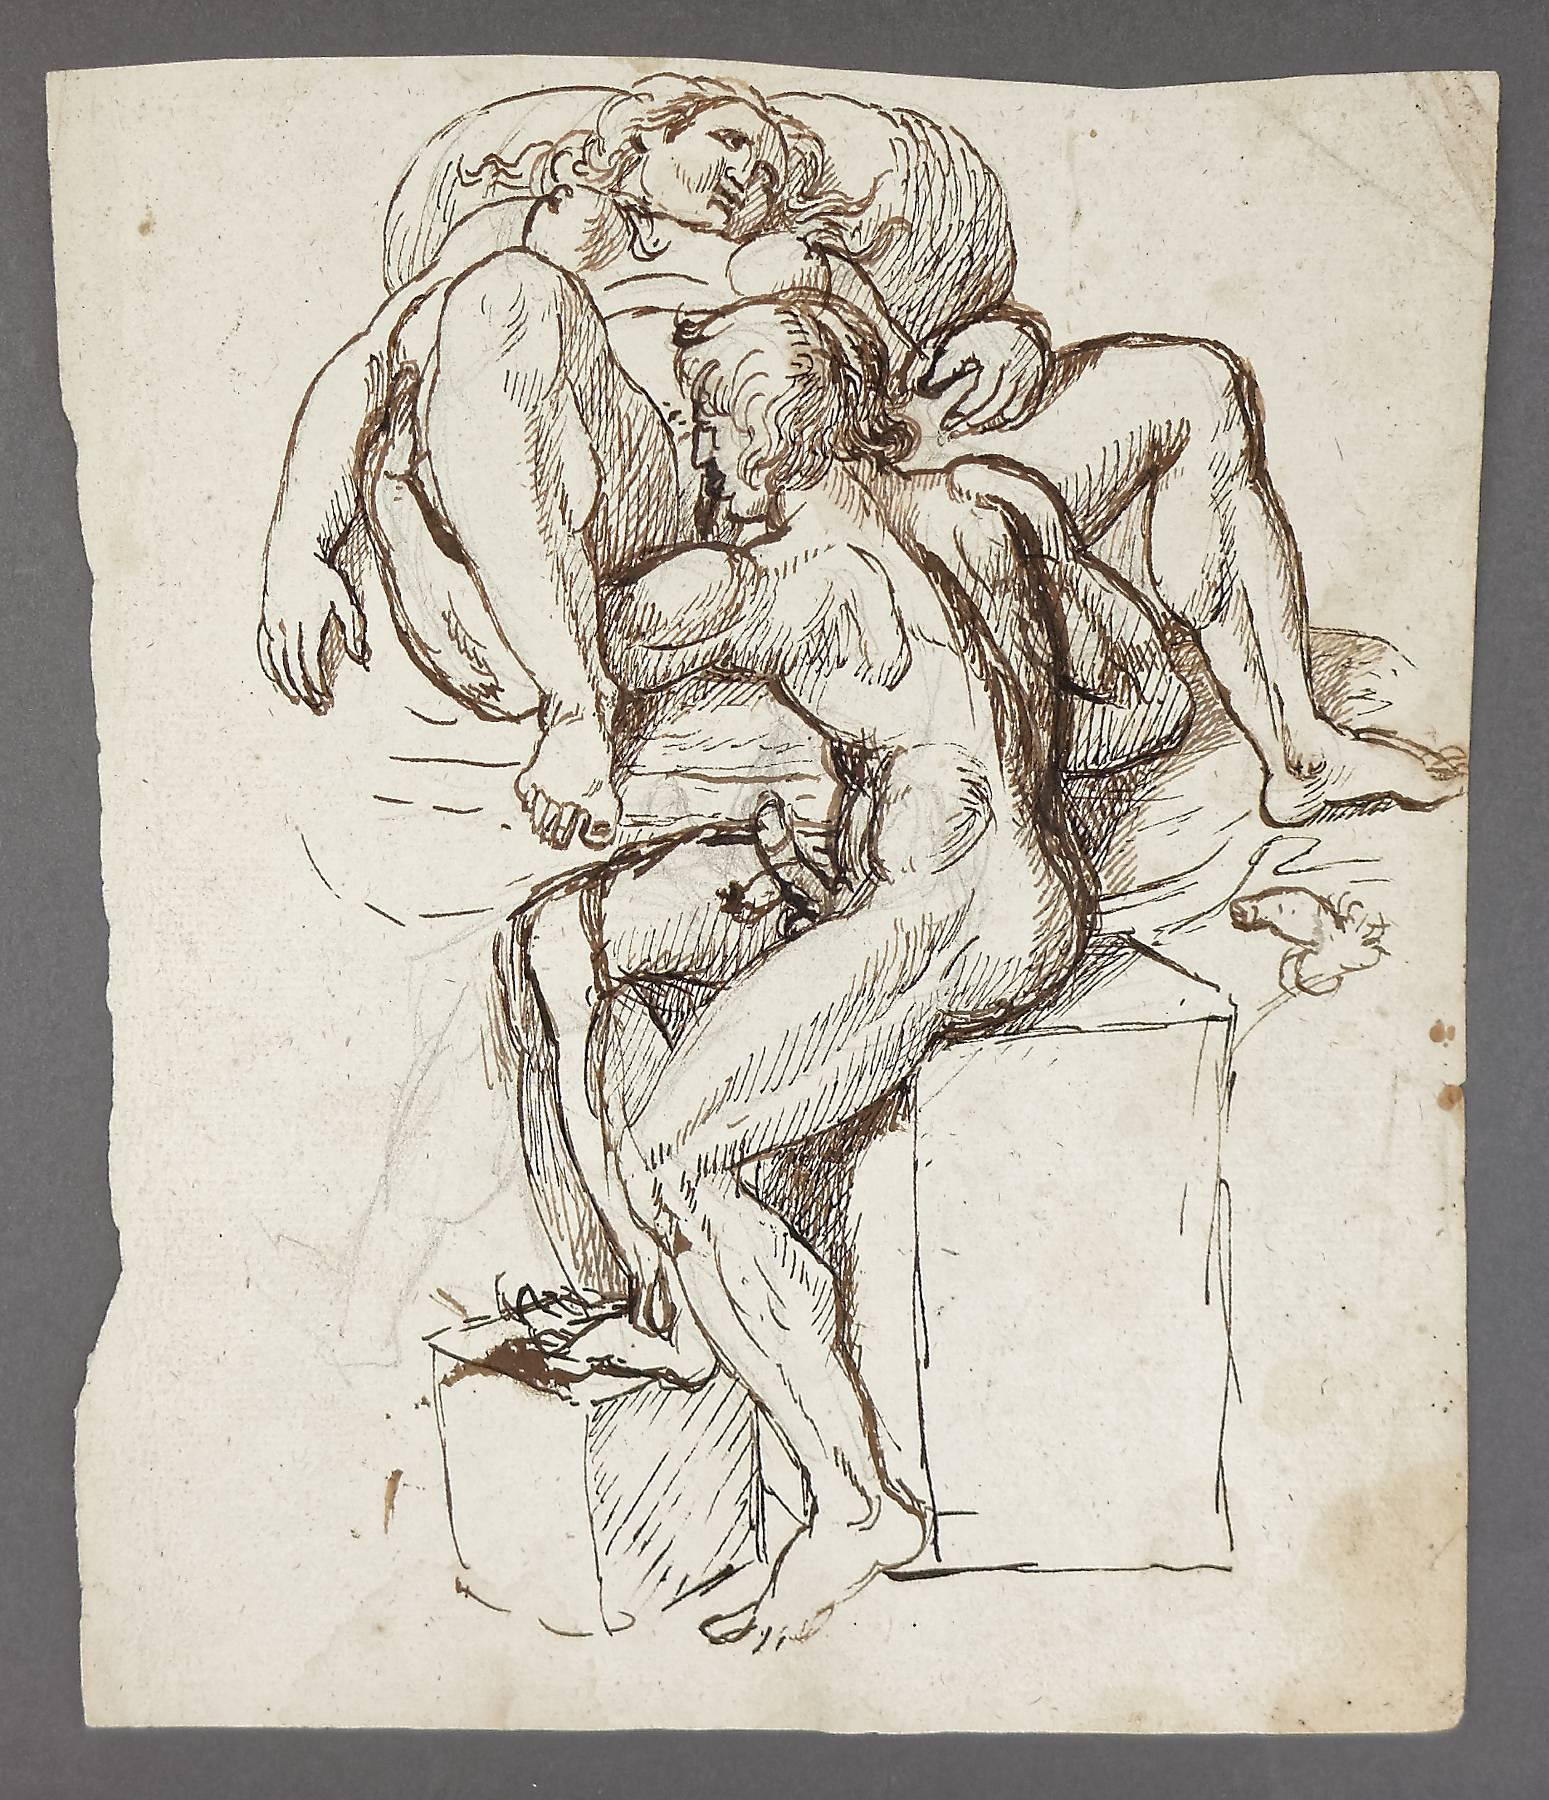 Seltene Altmeisterzeichnung aus dem 18. Jahrhundert mit einer expliziten erotischen Szene eines Paares beim Oralsex. Braune Tinte auf Papier mit Wasserzeichen, über Vorstudien in schwarzer Kreide.

Johan Tobias Sergel wurde 1740 in Stockholm